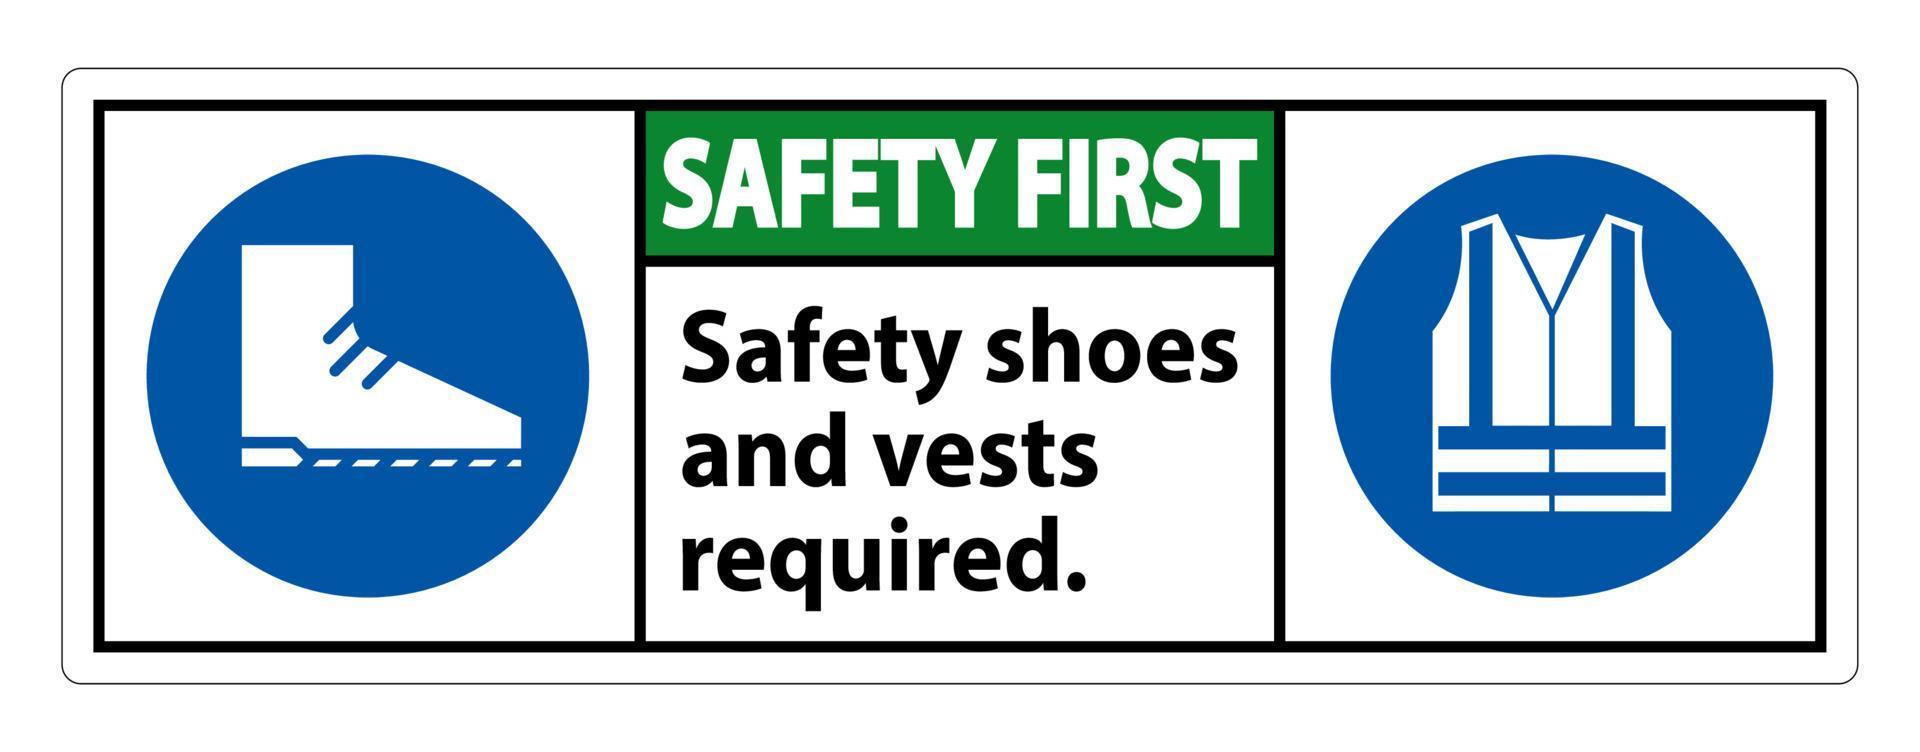 La seguridad es el primer signo de seguridad Se requieren zapatos y chaleco con símbolos de ppe sobre fondo blanco, ilustración vectorial vector